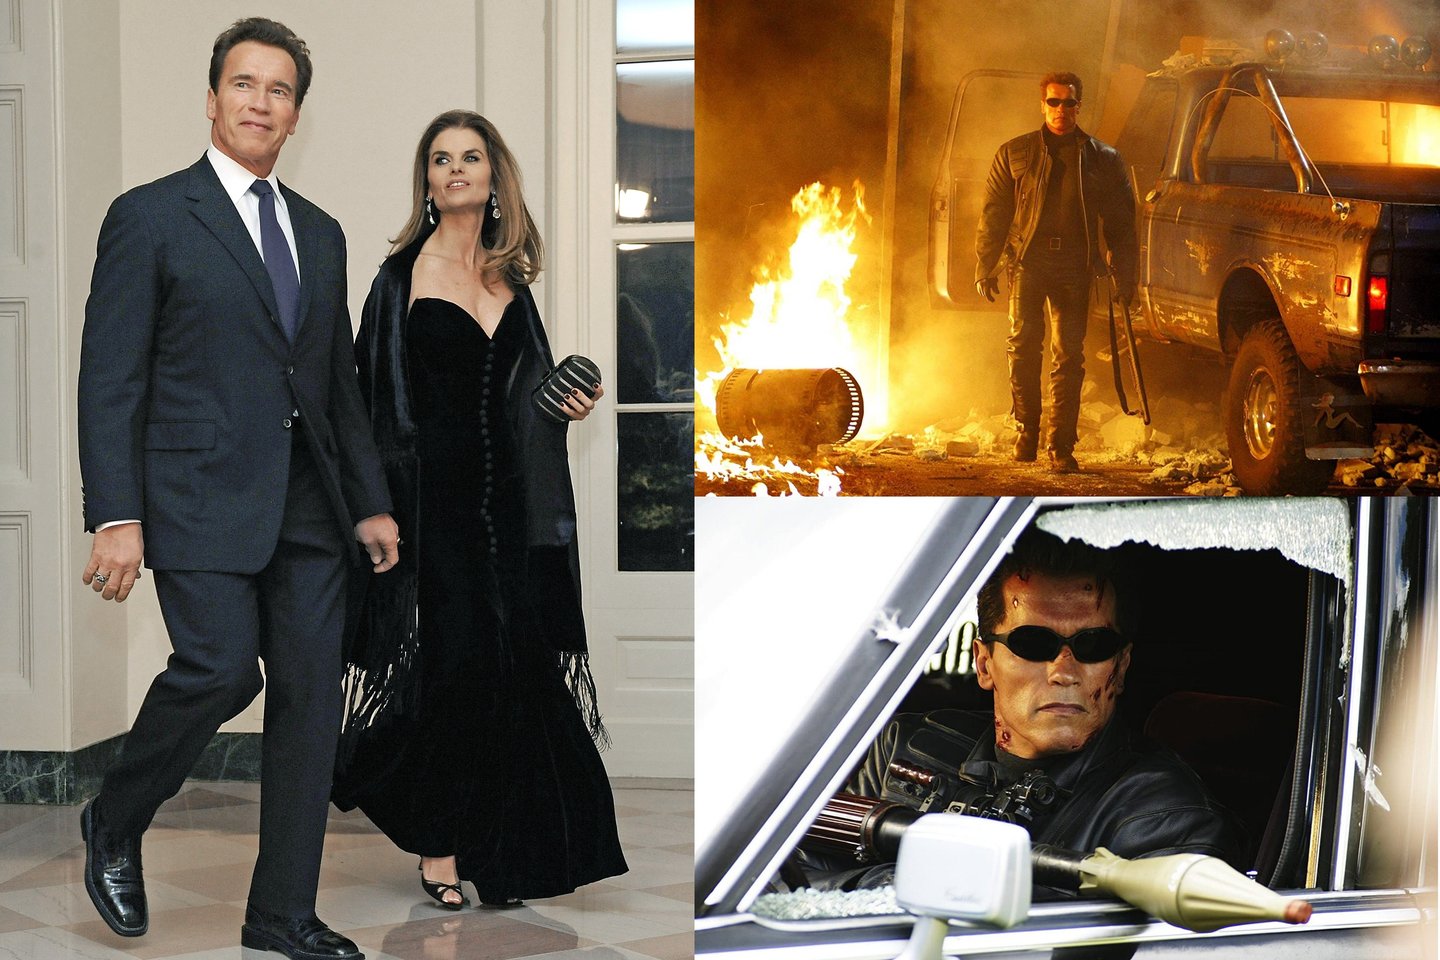 Terminatoriaus vaidmeniu išgarsėjęs A.Schwarzeneggeris ir M.Shriver išsiskyrė po neištikimybės skandalo.<br>„Reuters“/“Scanpix“ ir imdb.com nuotr.